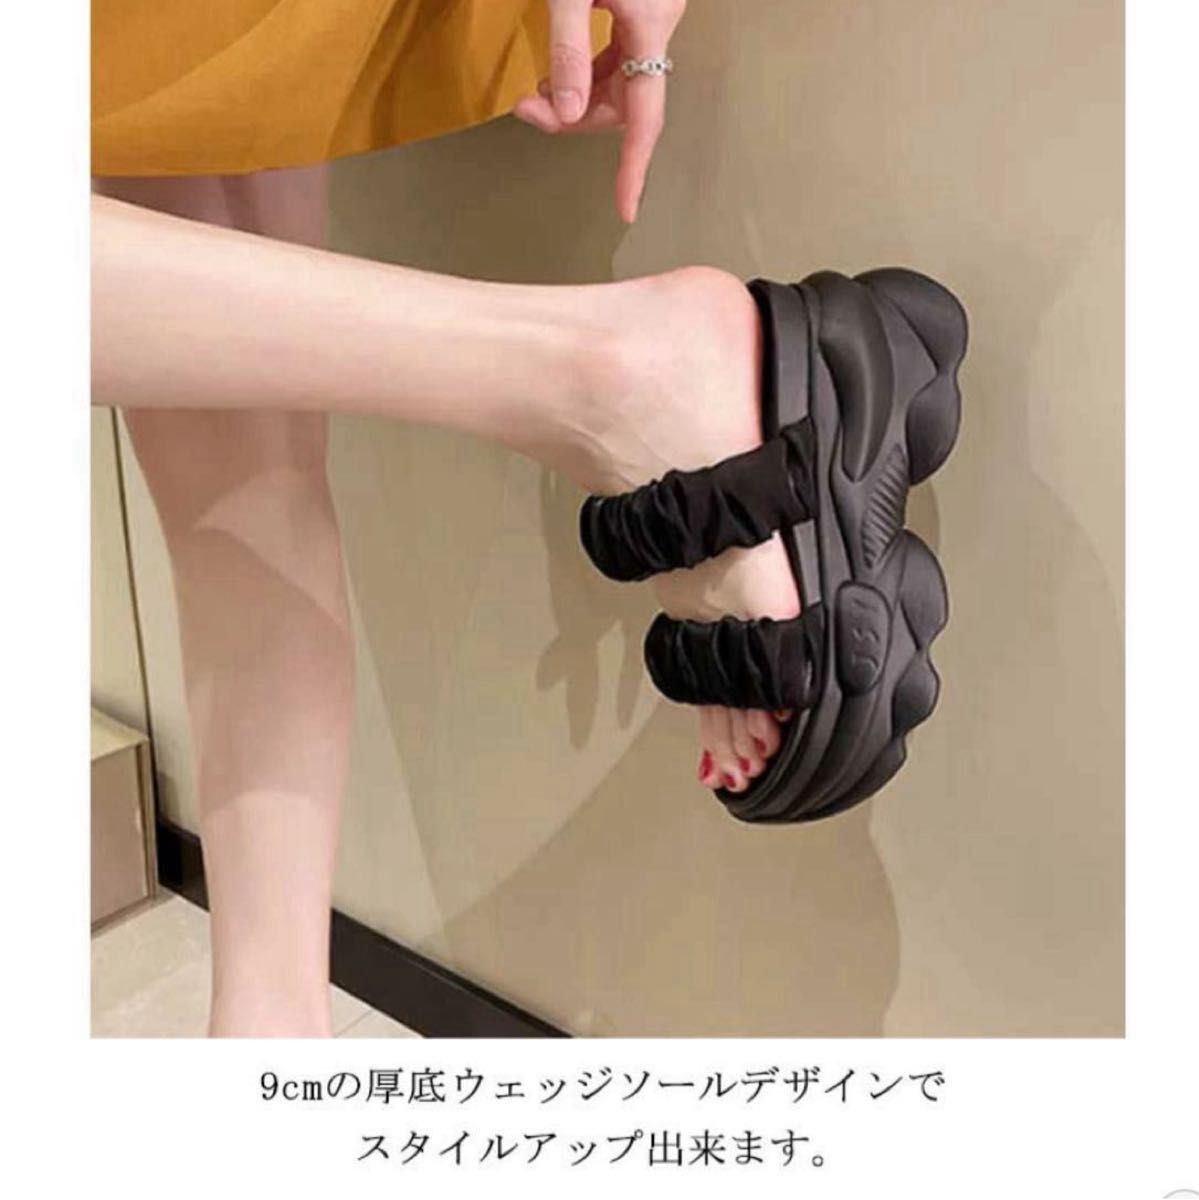 厚底 サンダル スタイルアップ ブラック 履きやすい 人気 厚底サンダル 韓国 